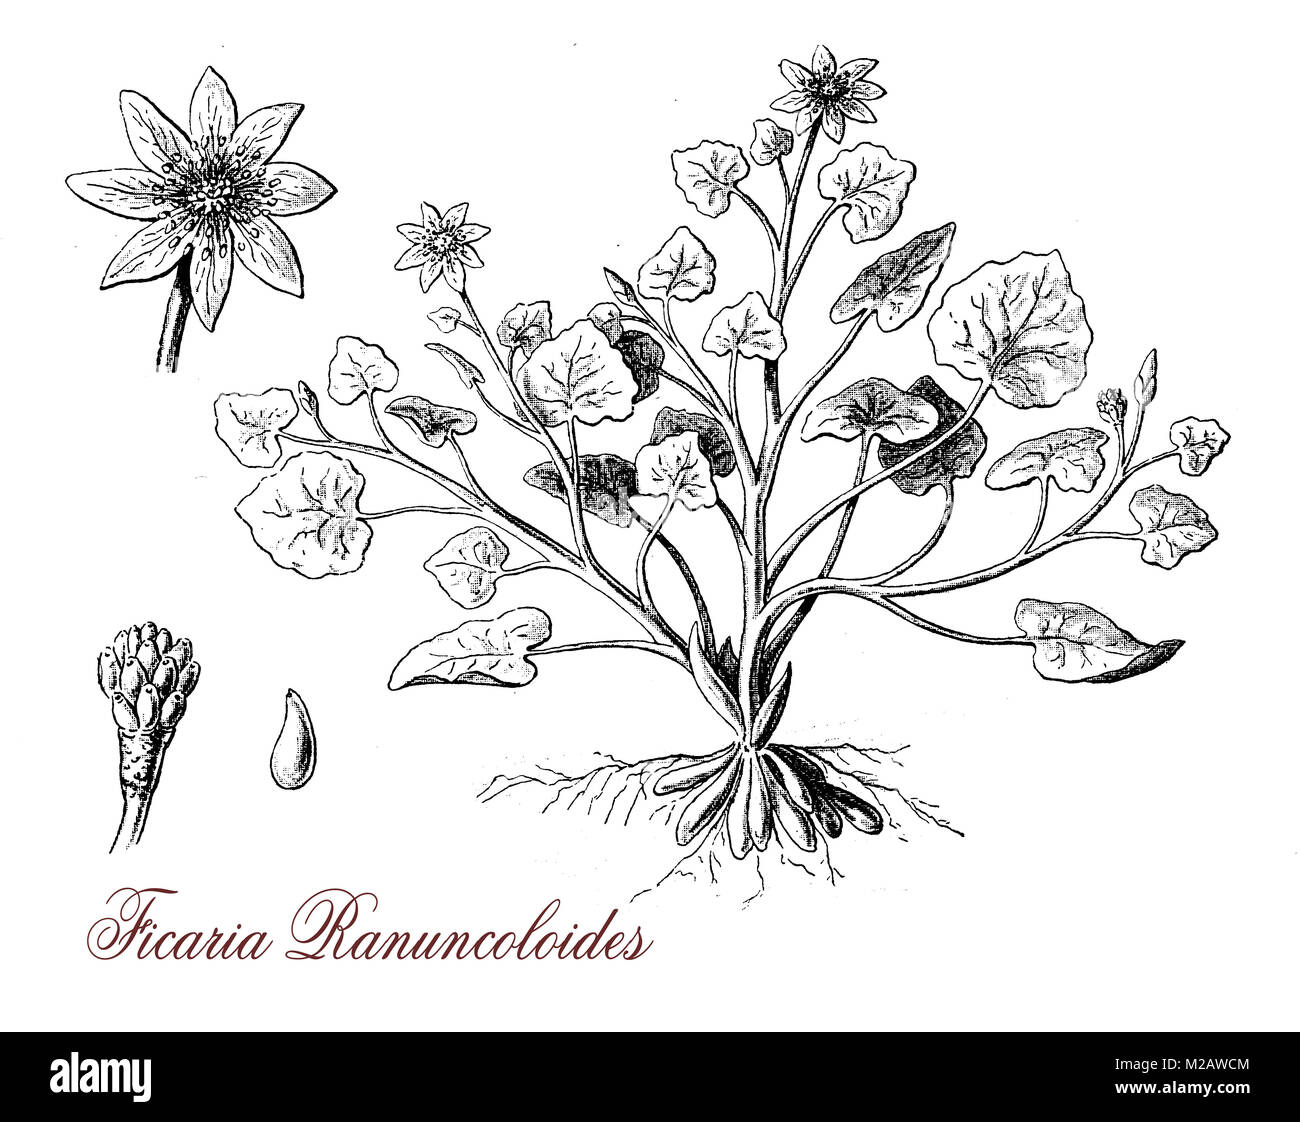 Vintage incisione di ficaria ranuncoloides, la fioritura delle piante con lucida jellow fiori, velenosi, letale se ingerito da animali allevati a pascolo Foto Stock